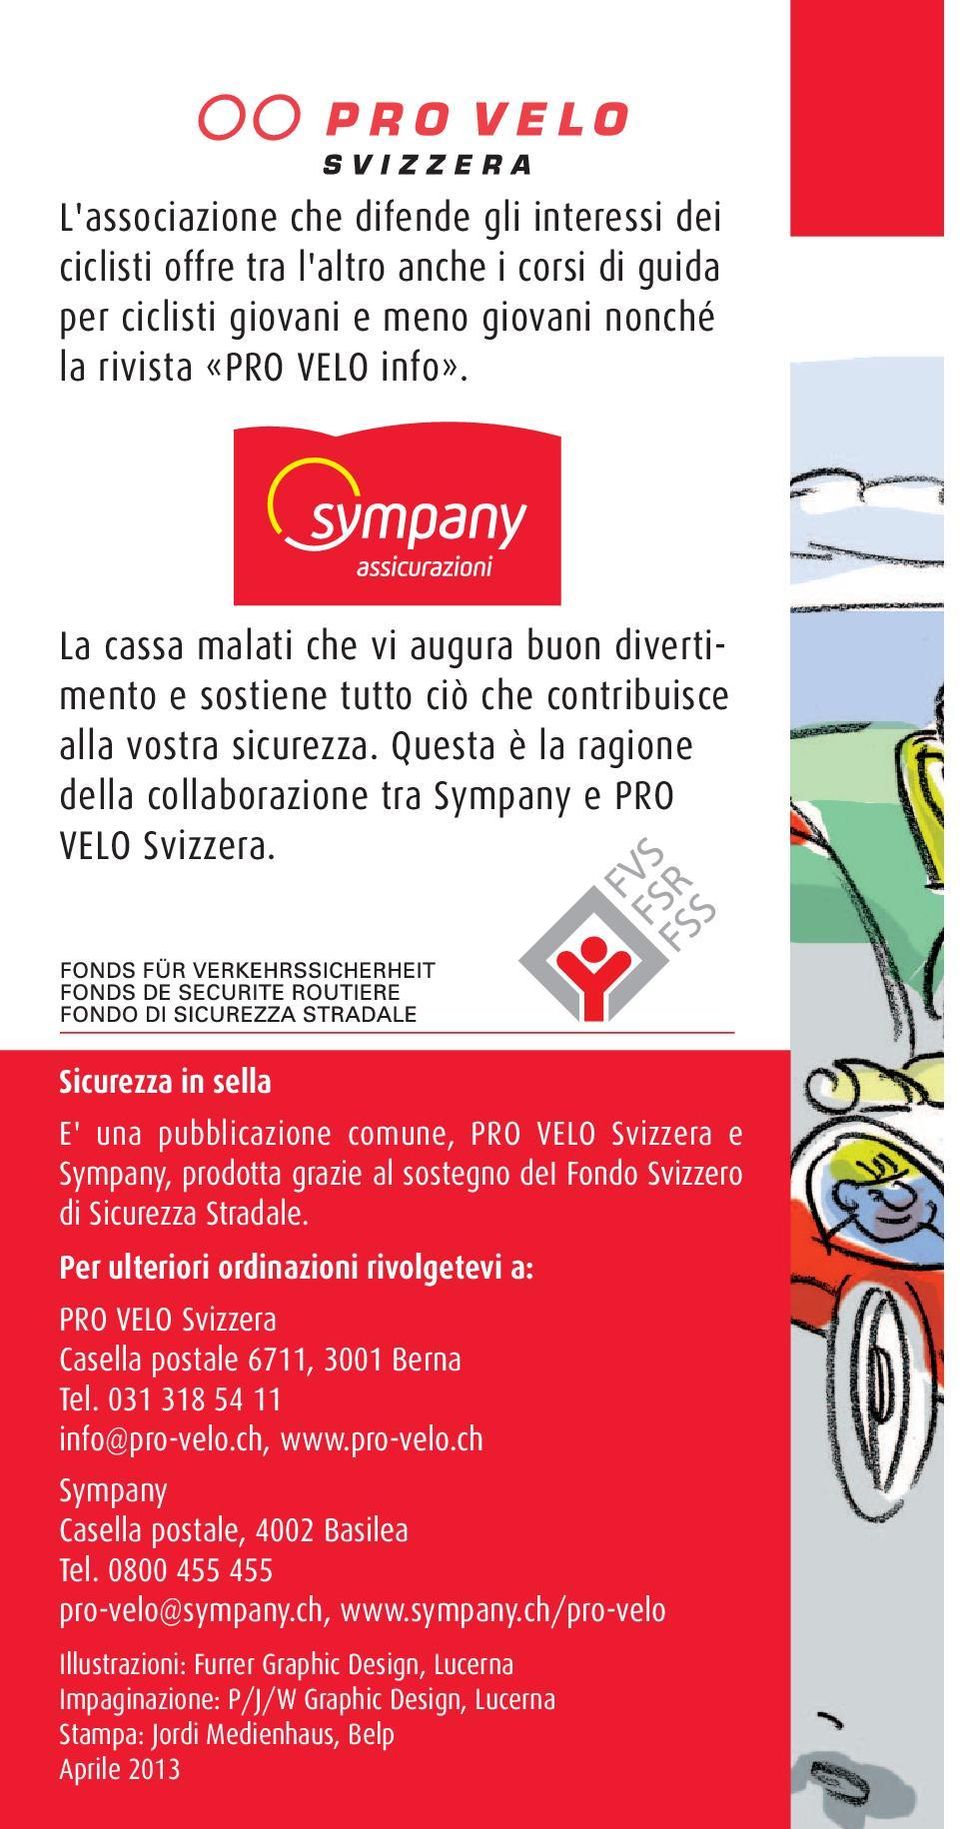 Sicurezza in sella E' una pubblicazione comune, PRO VELO Svizzera e Sympany, prodotta grazie al sostegno dei Fondo Svizzero di Sicurezza Stradale.